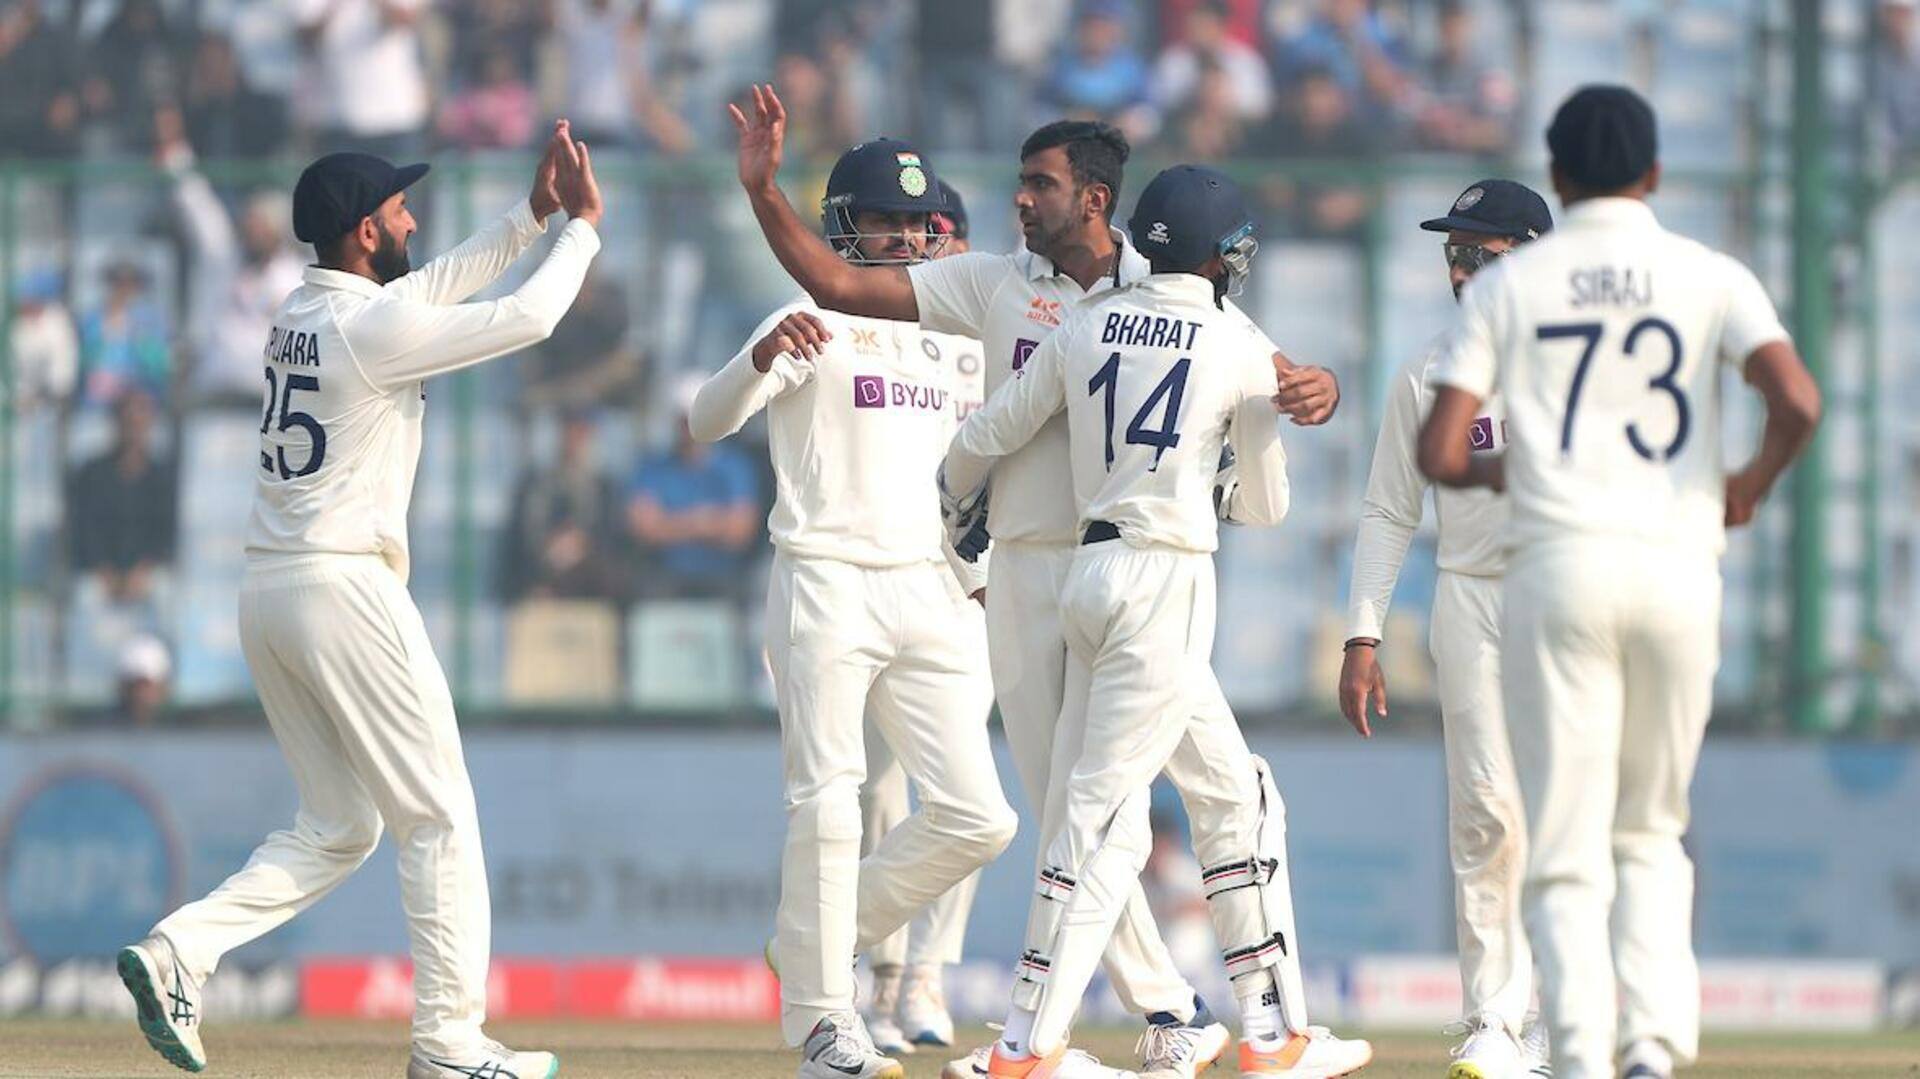 बॉर्डर-गावस्कर ट्रॉफी: शेष दो टेस्ट के लिए भारतीय क्रिकेट टीम का ऐलान, वनडे टीम भी घोषित